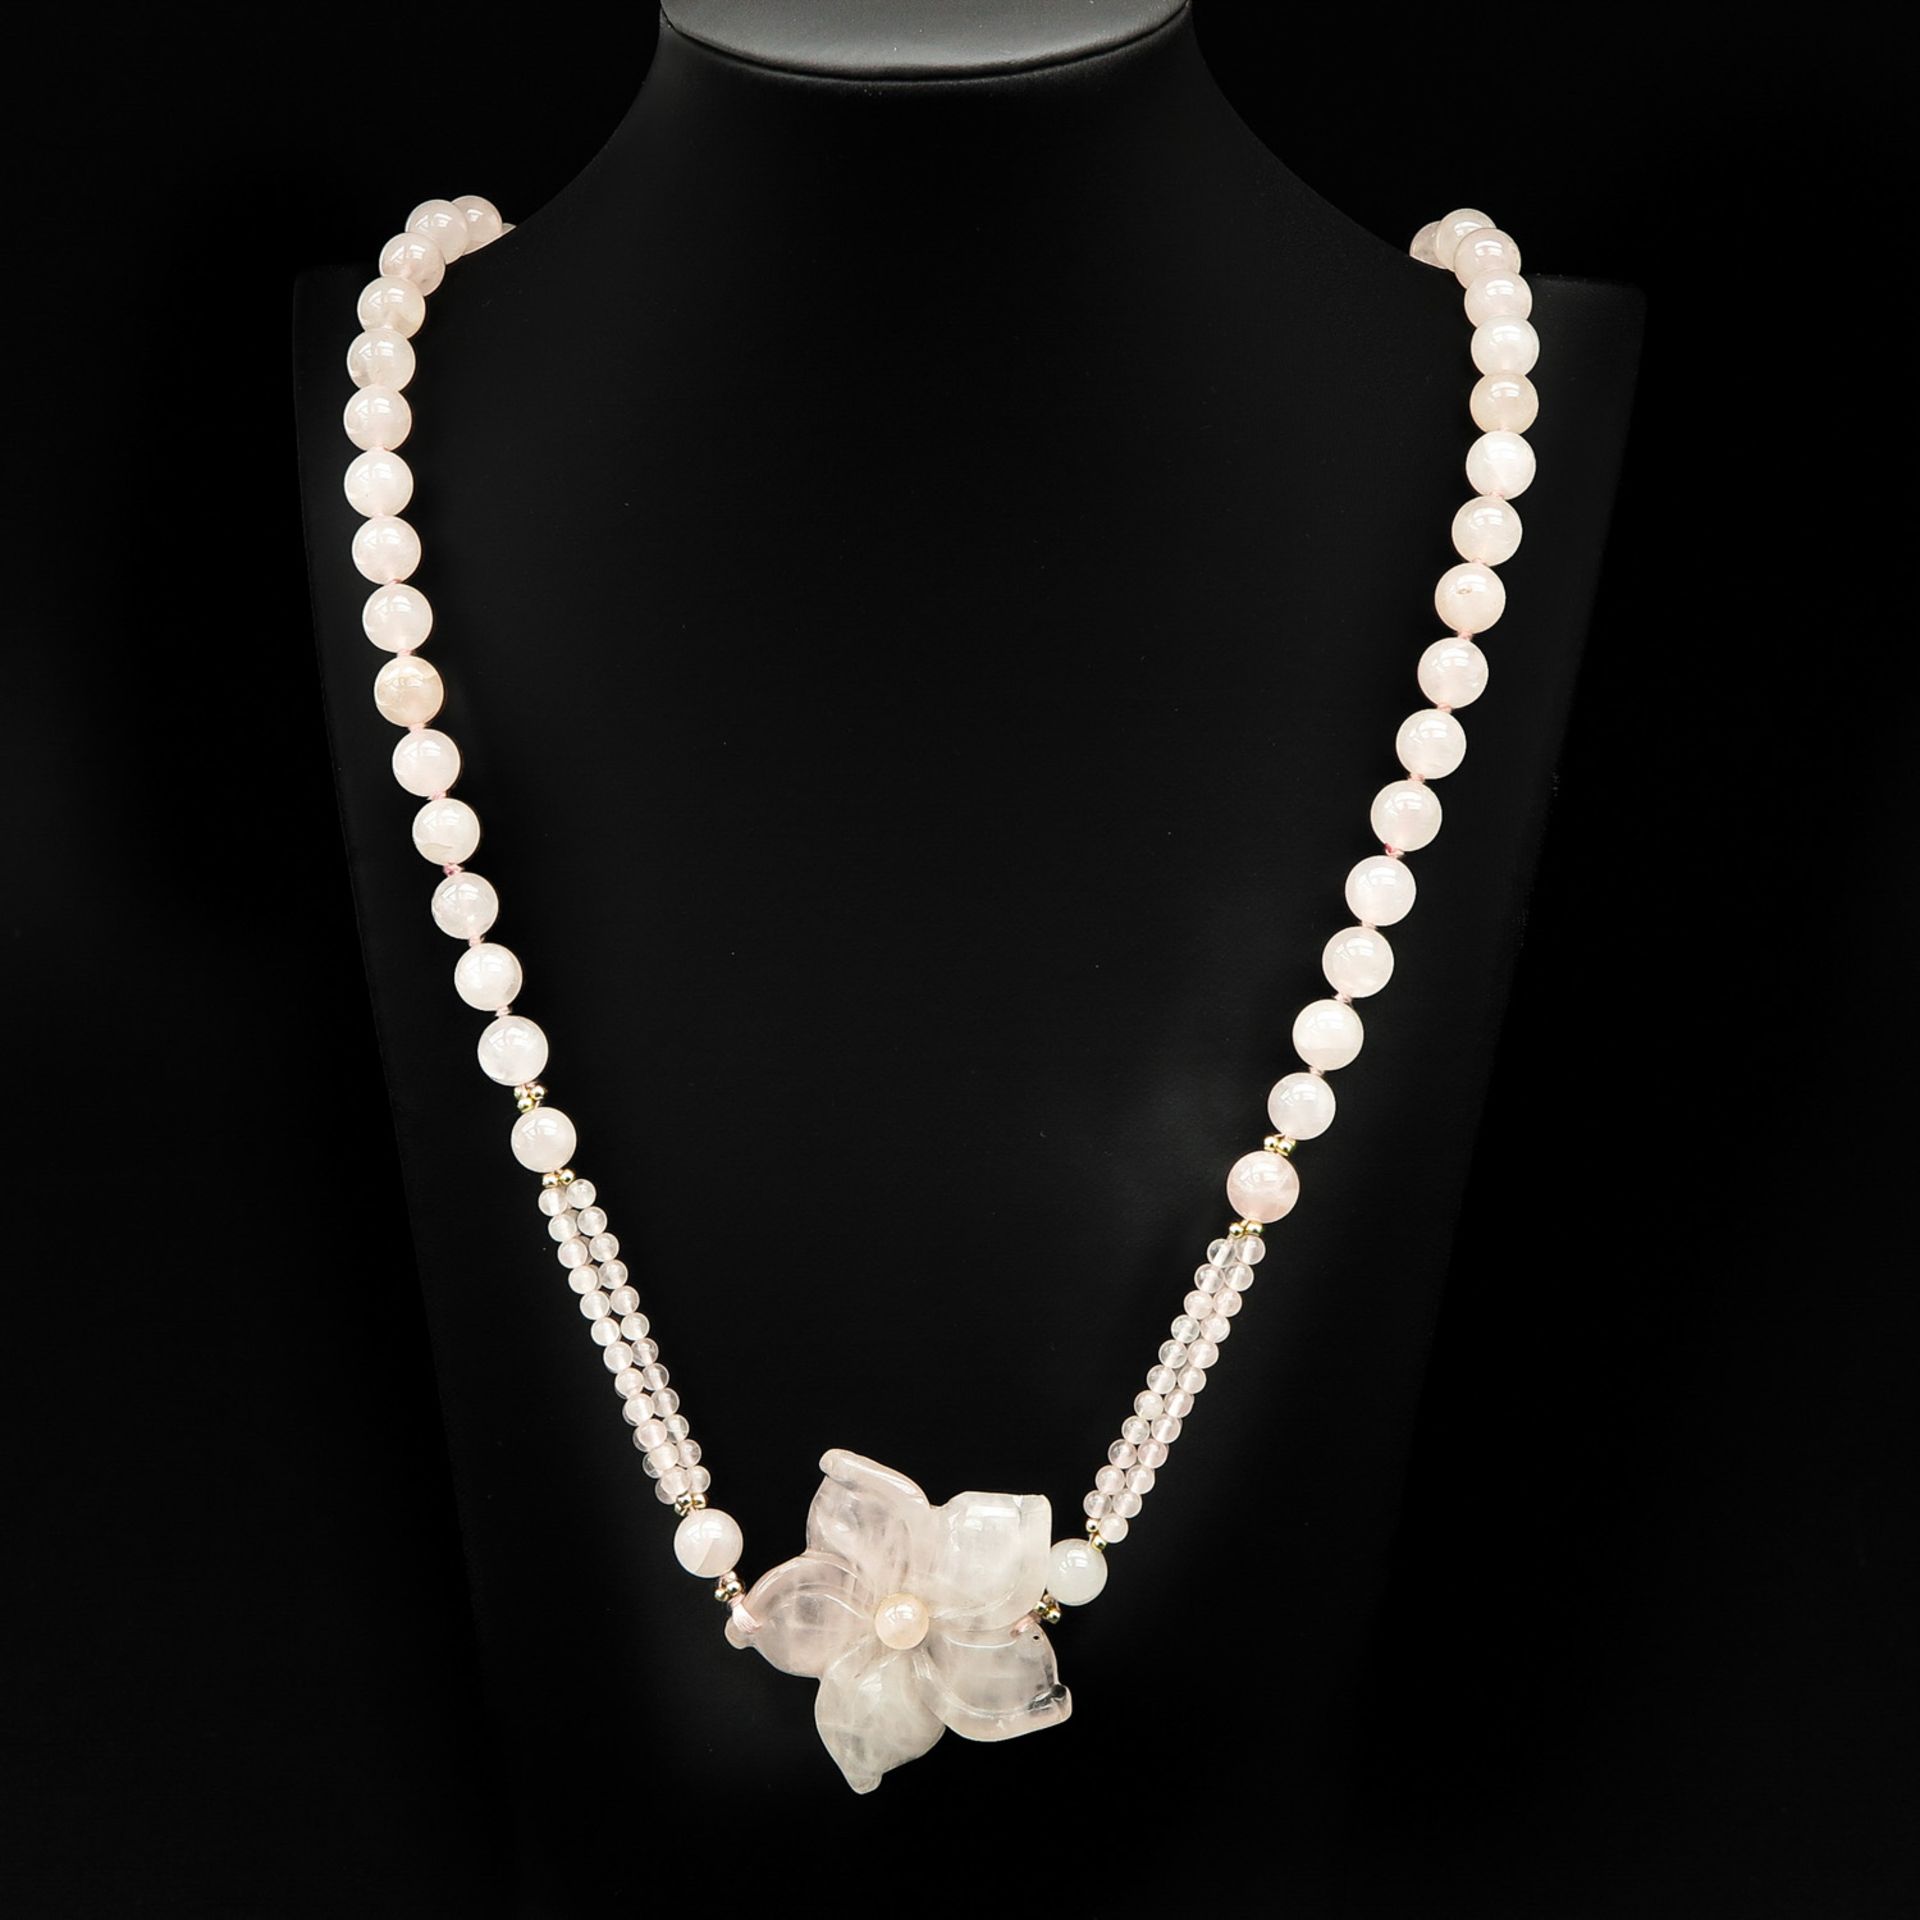 A Rose Quartz Necklace